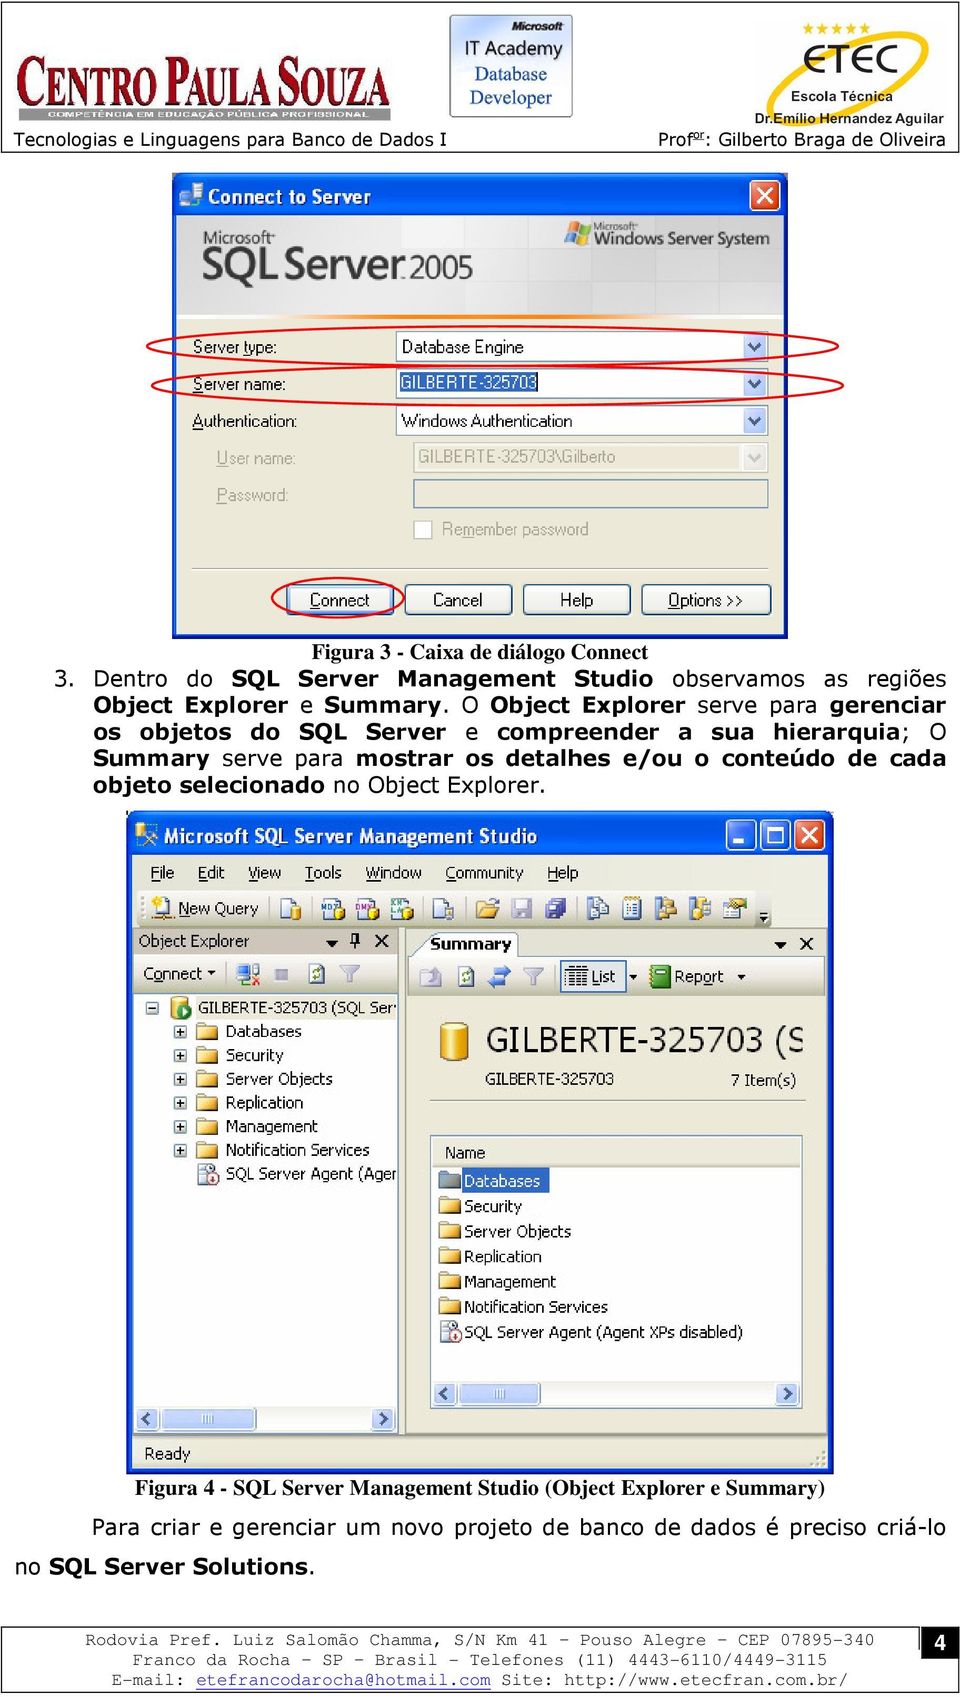 O Object Explorer serve para gerenciar os objetos do SQL Server e compreender a sua hierarquia; O Summary serve para